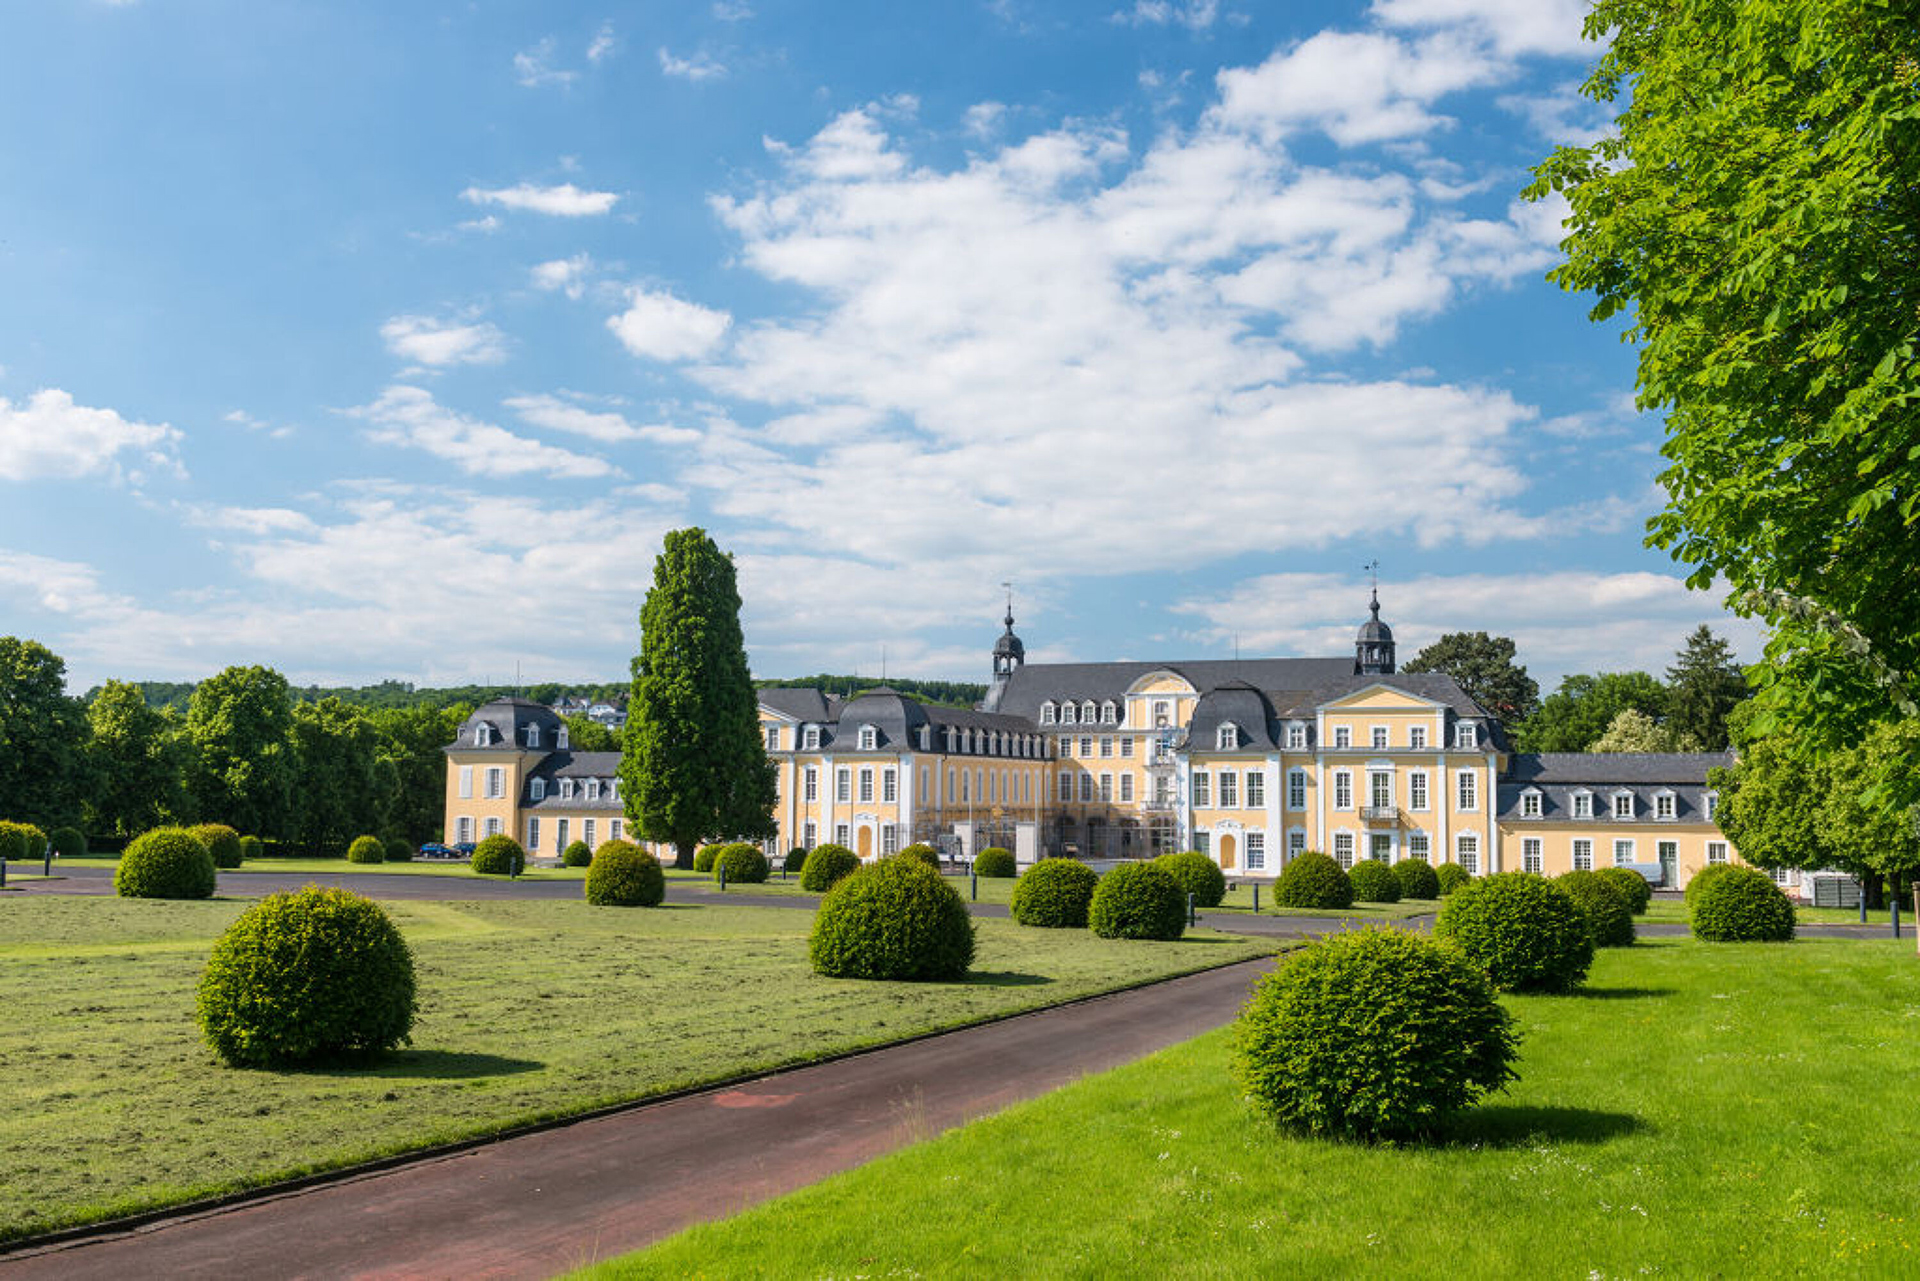 Blick auf das Schloss Oranienstein mit dem Schlossgarten im Vordergrund